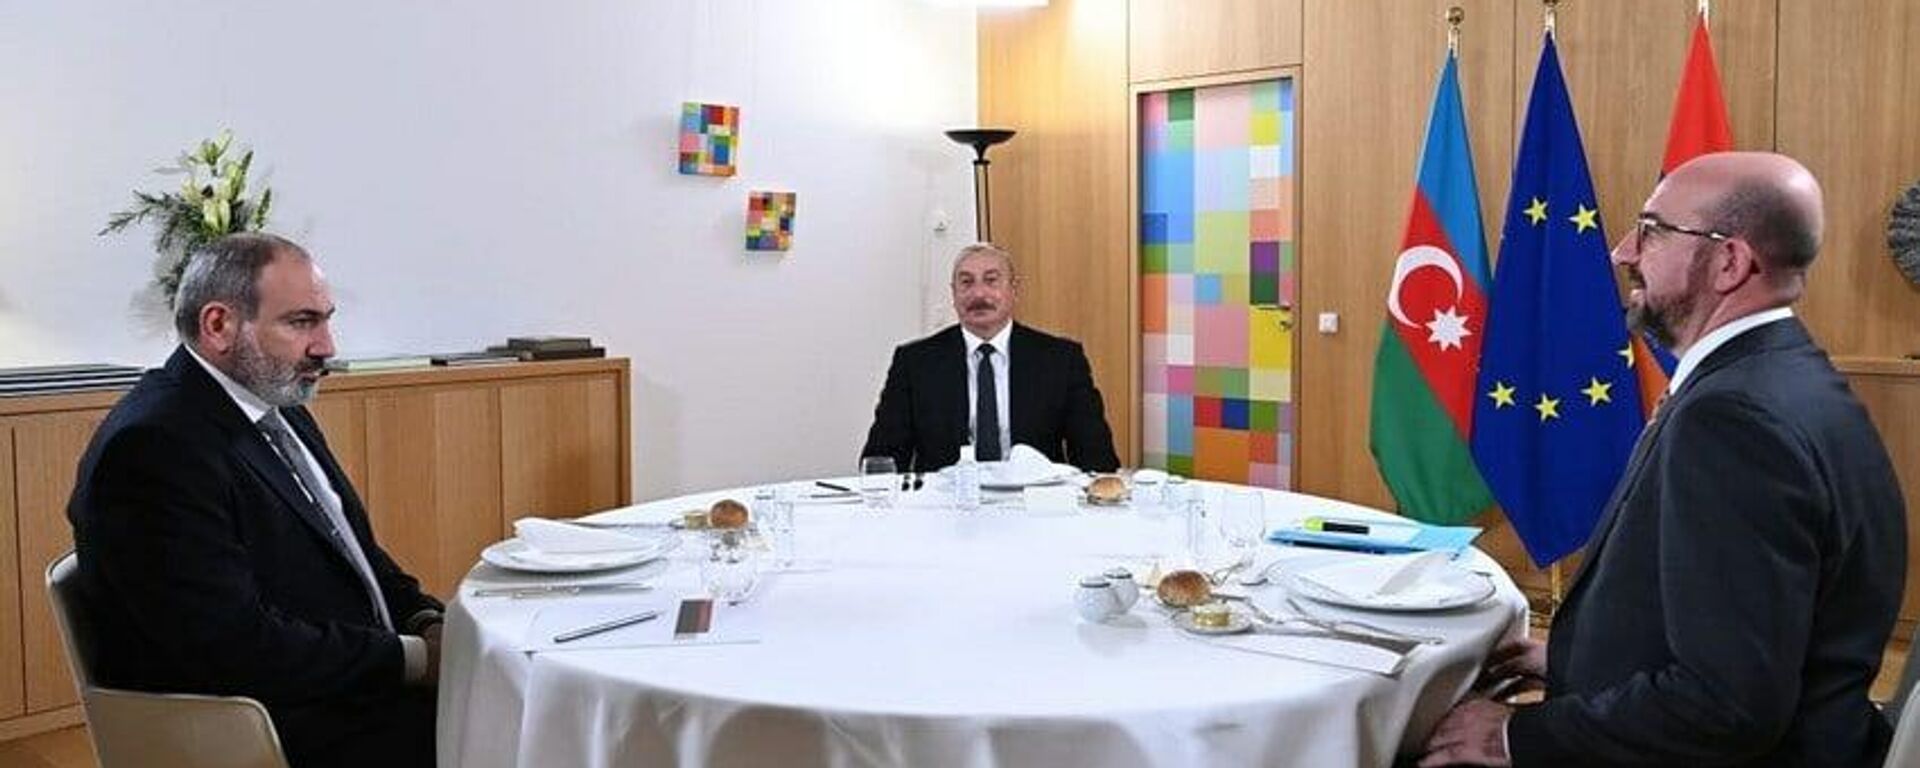 В Брюсселе проходит встреча лидеров Азербайджана и Армении при посредничестве главы Евросовета. - Sputnik Azərbaycan, 1920, 14.12.2021